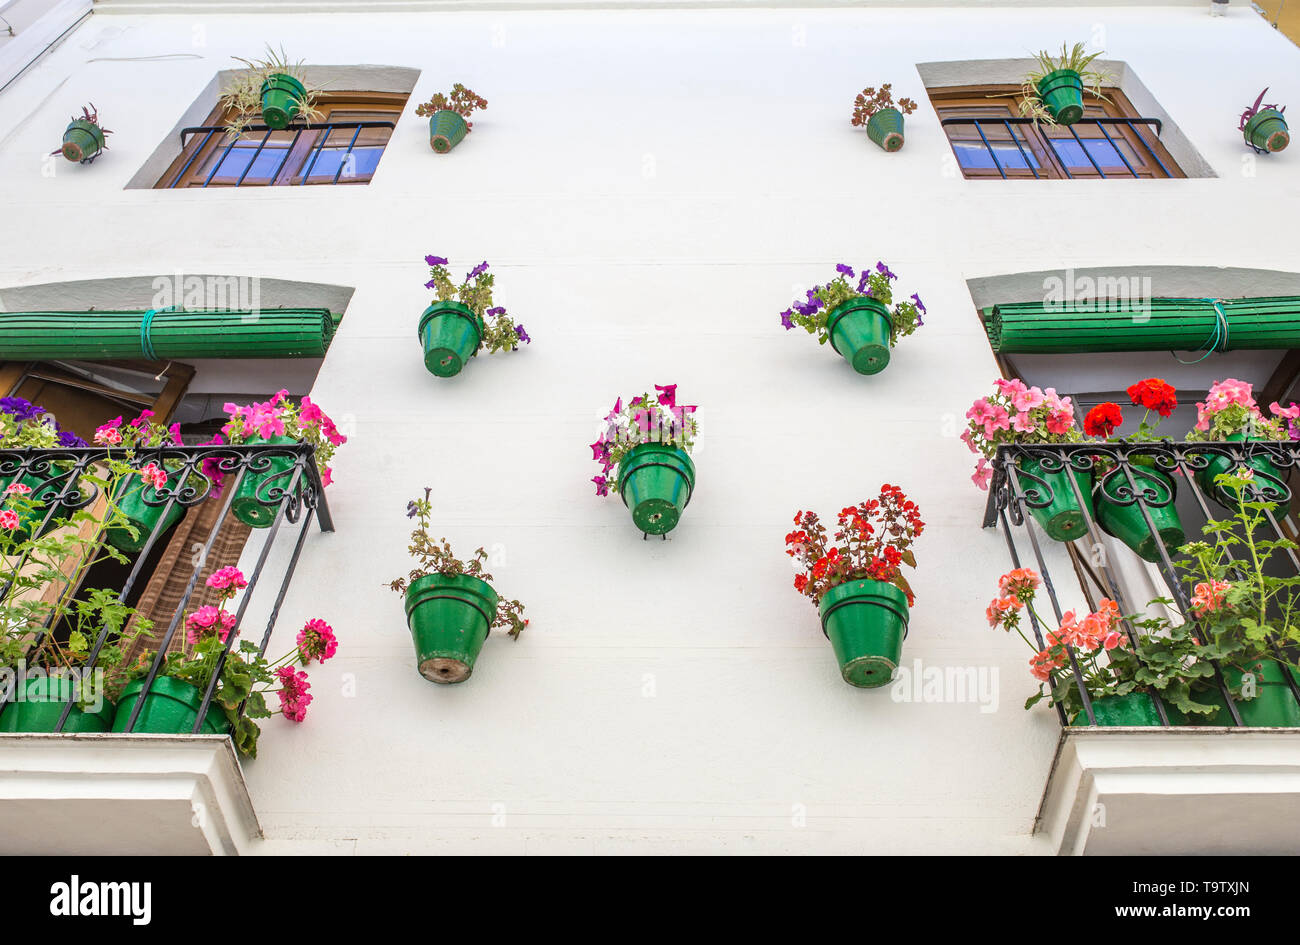 Façade de maison pleine de pots de fleurs vert. Arrière-plan de l'architecture andalouse typique Banque D'Images